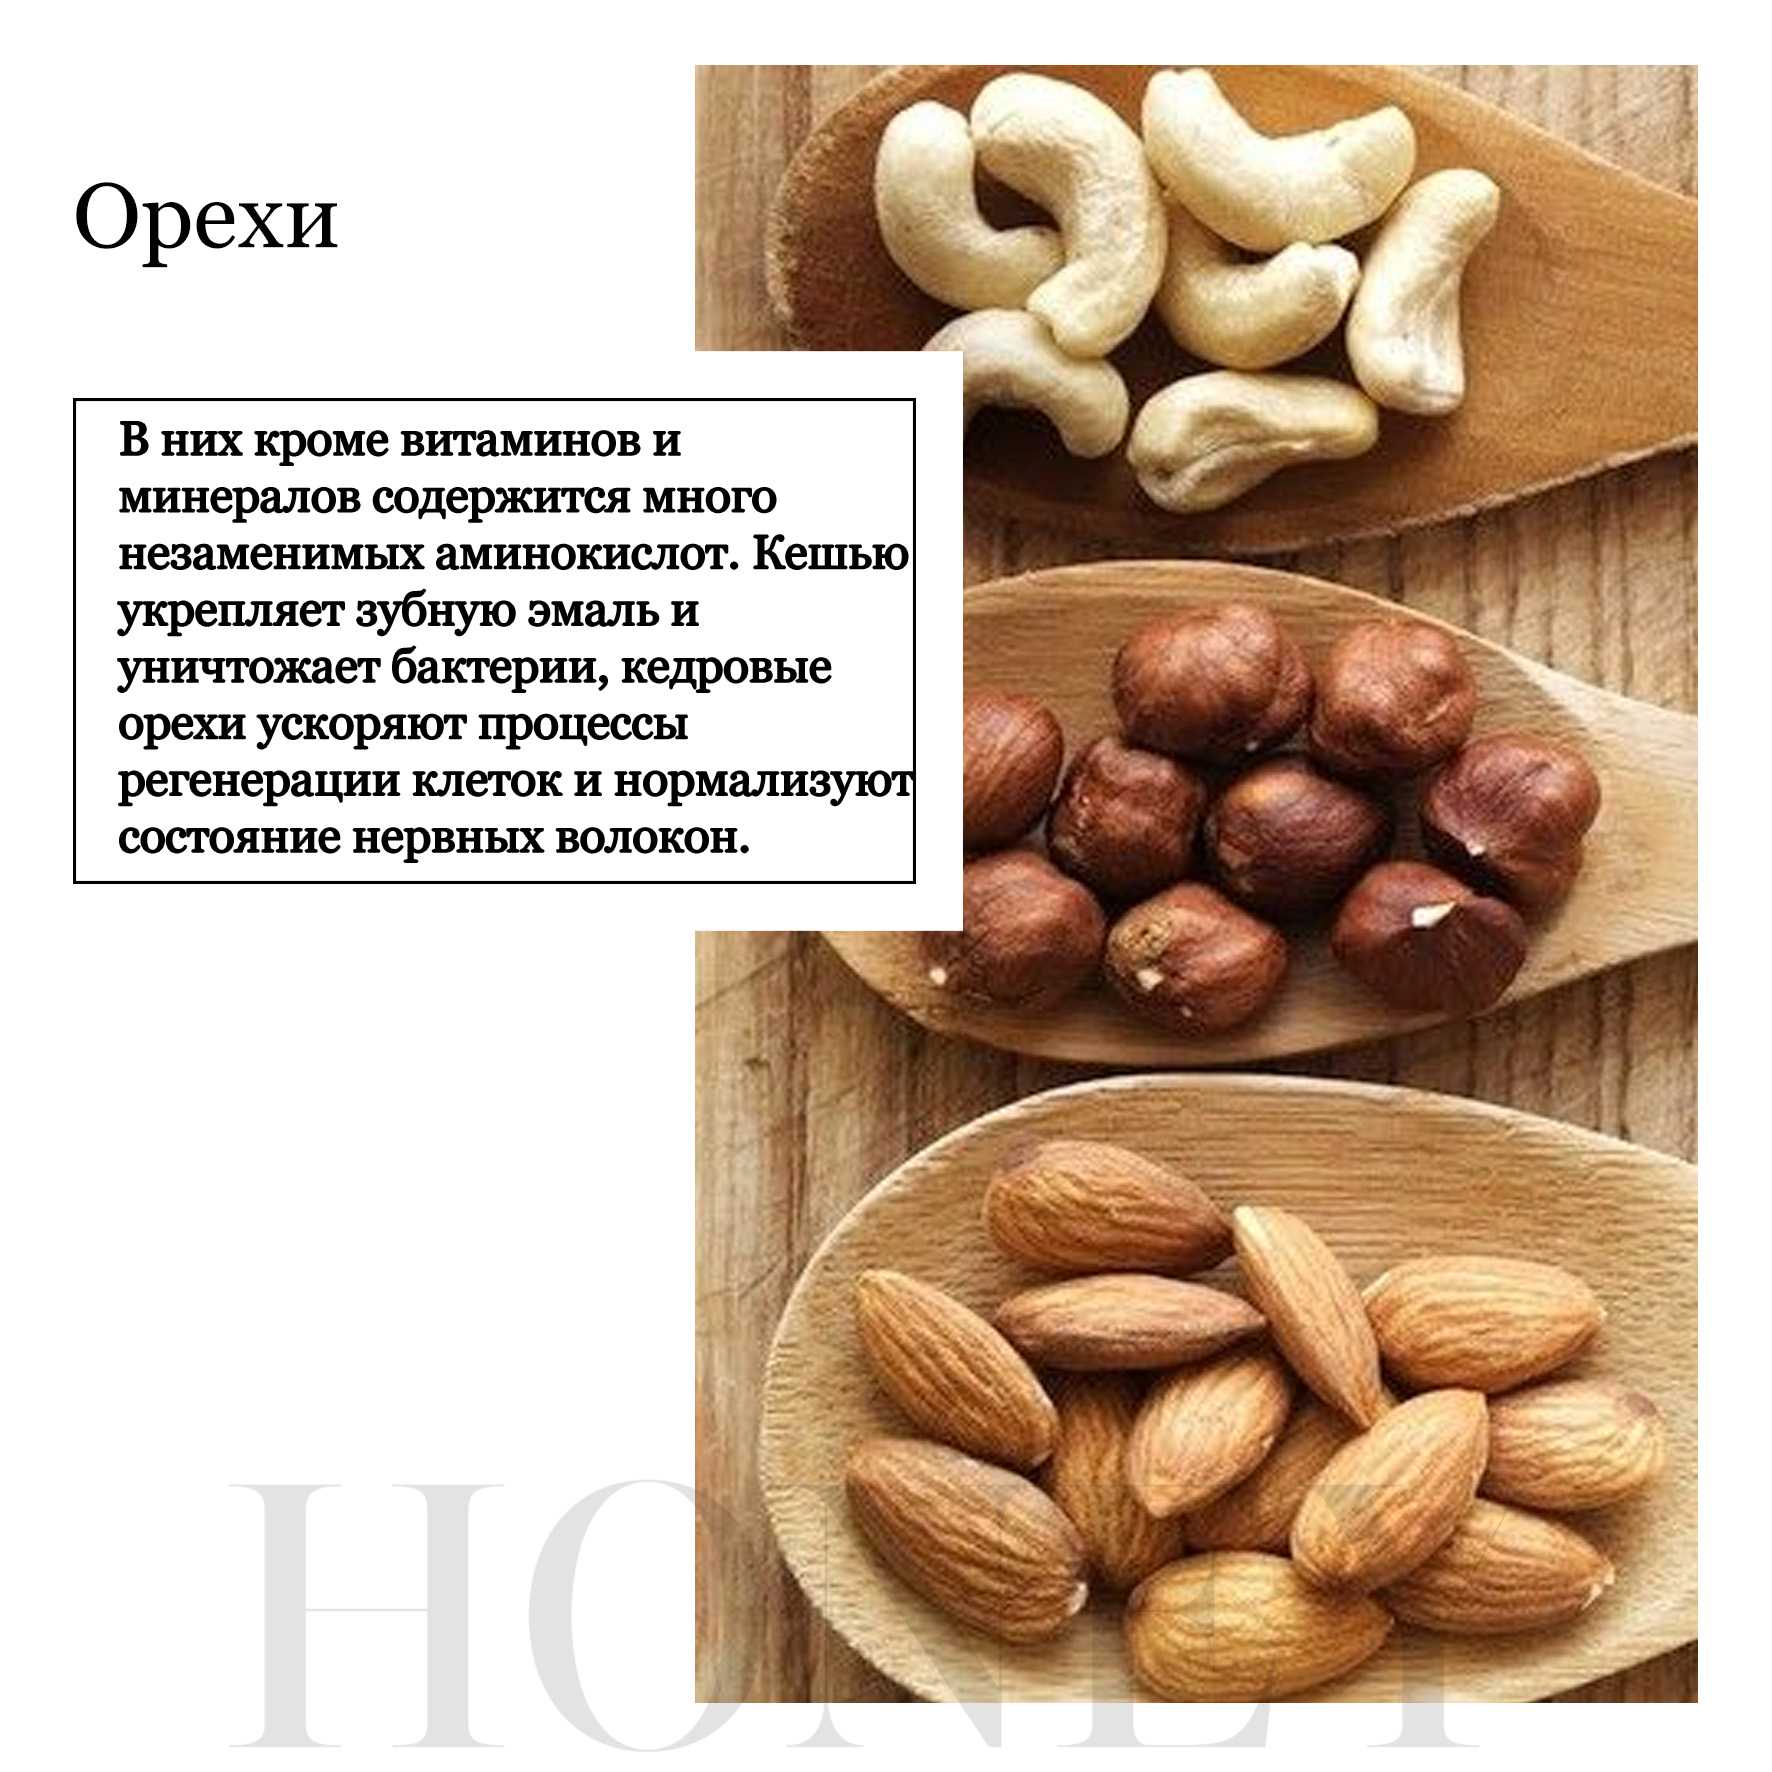 Орех кешью польза для мужчин. Калории в Кедровом орехе. Орехи кешью витамины. Чем полезны орехи кешью. Полезные свойства орехов.